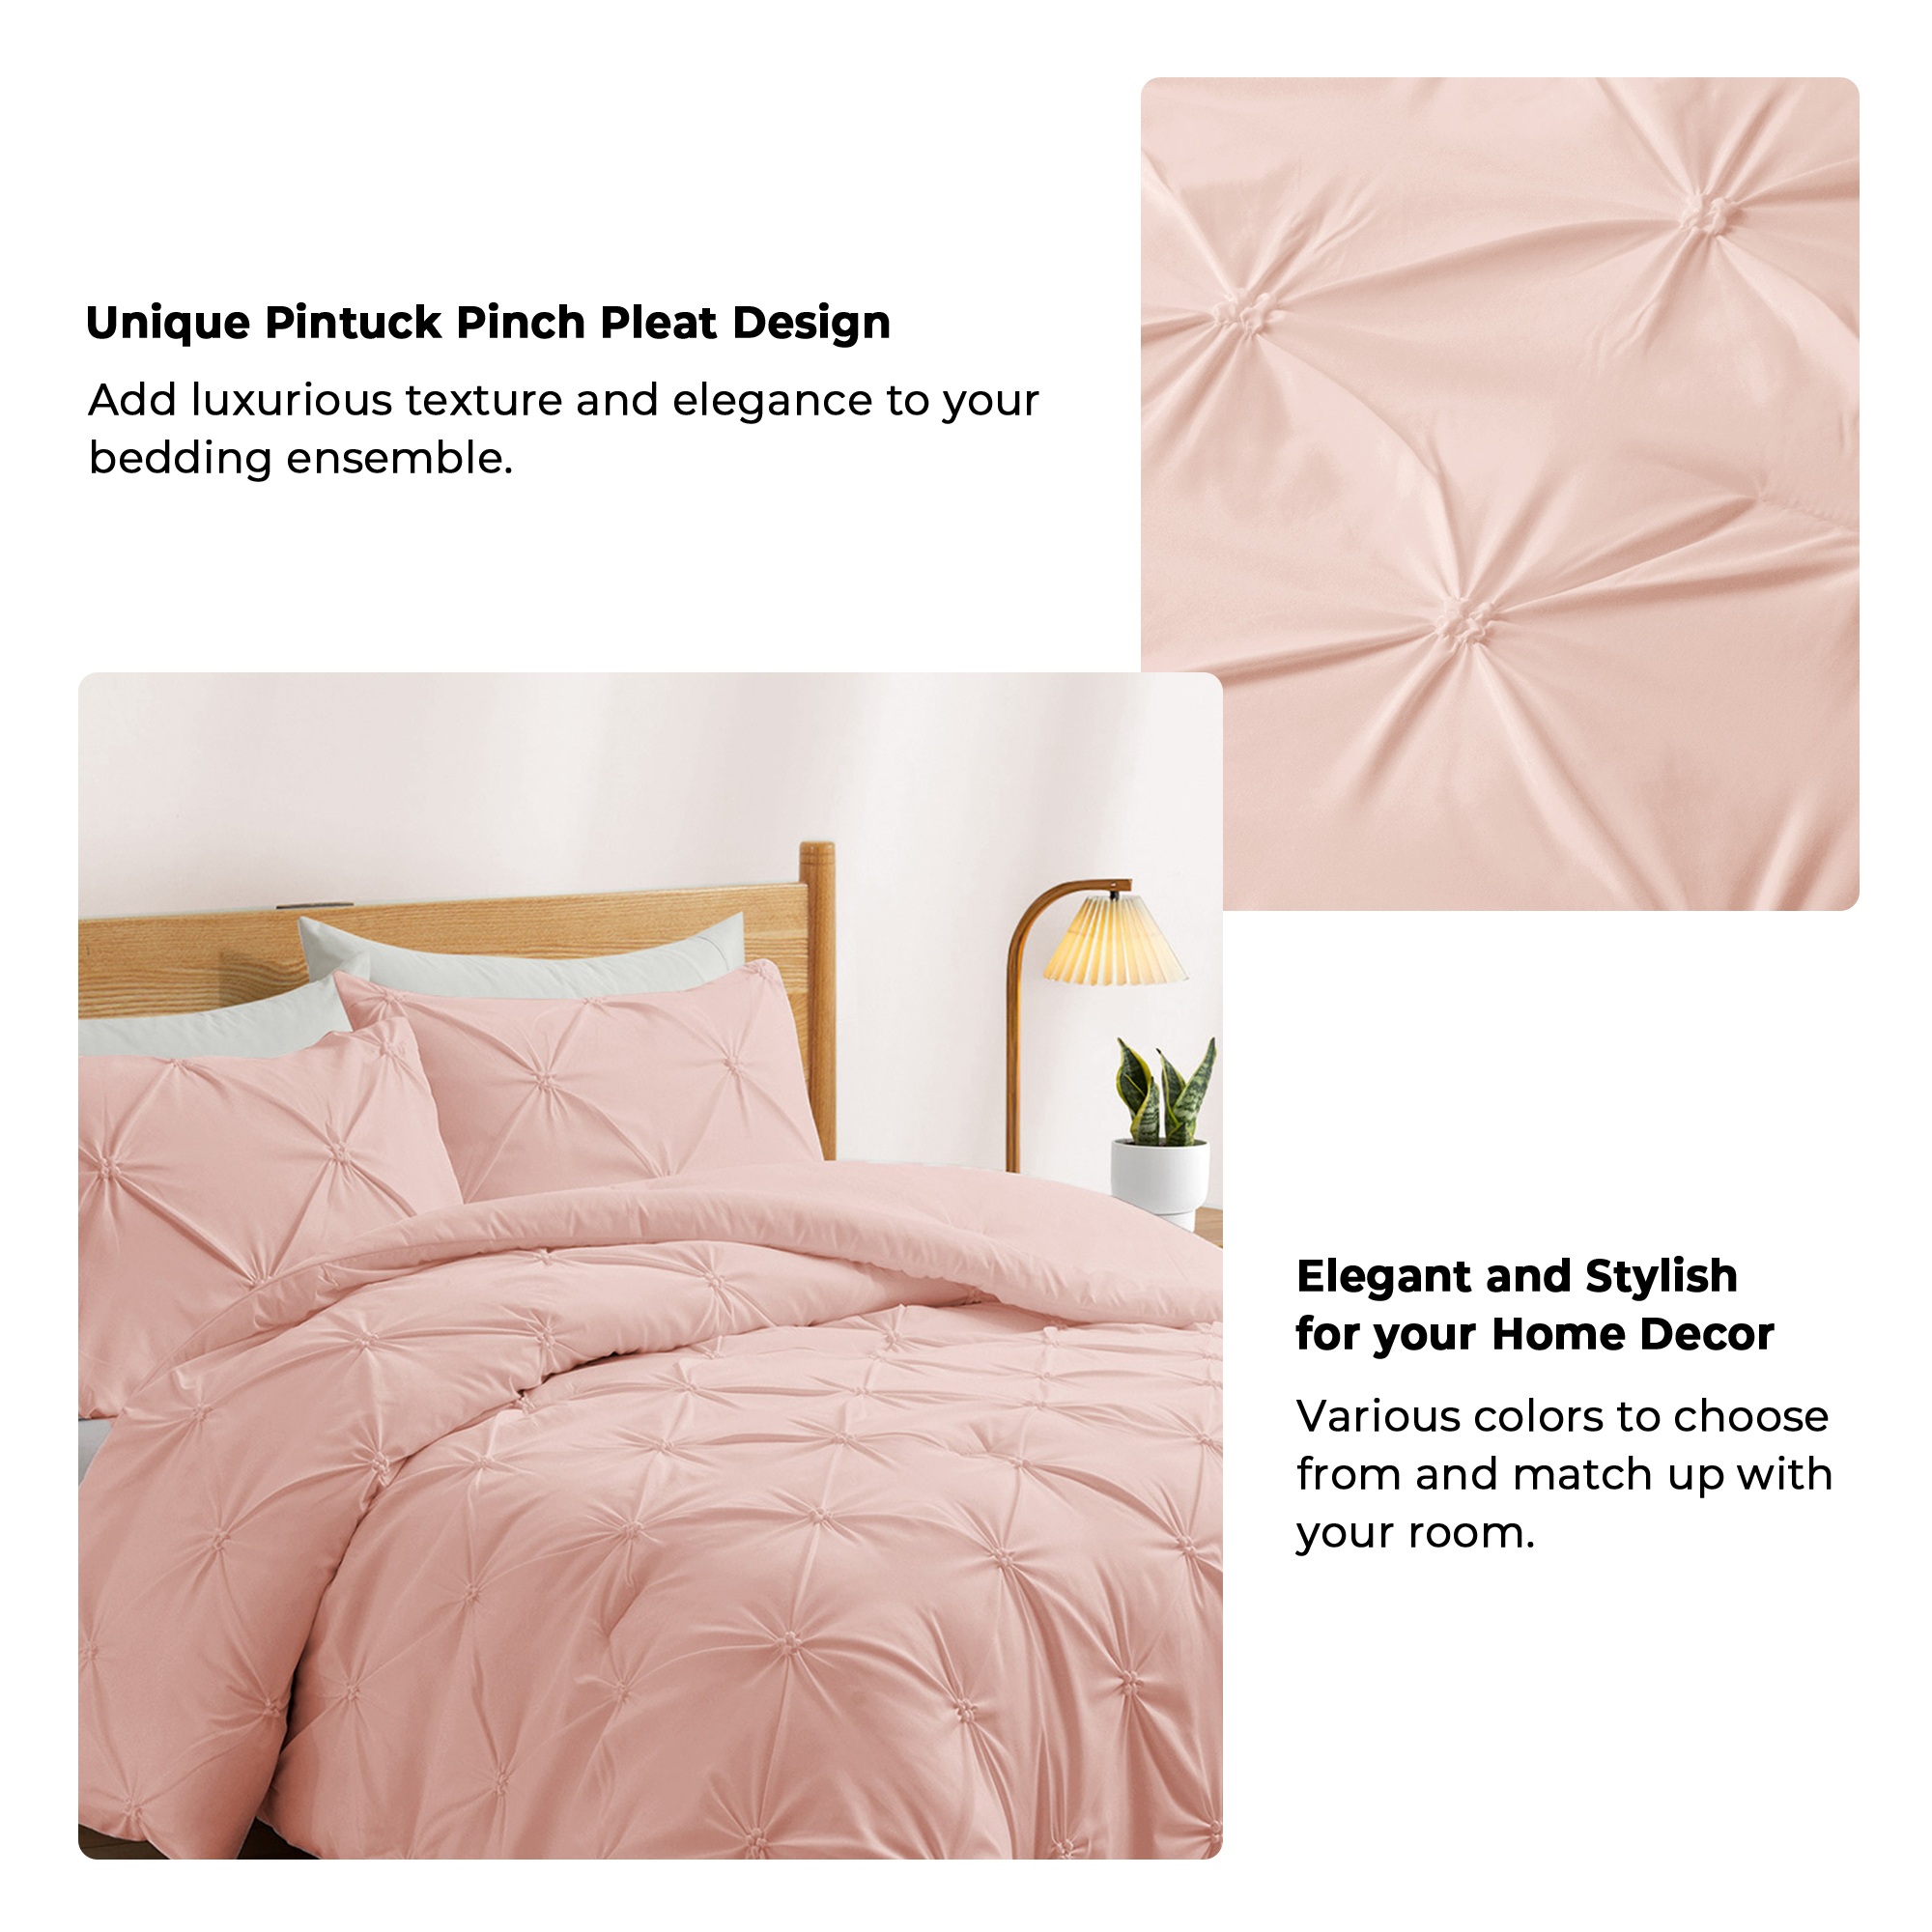 3 Piece Pinch Pleat Comforter Set With Sham - Cream, King